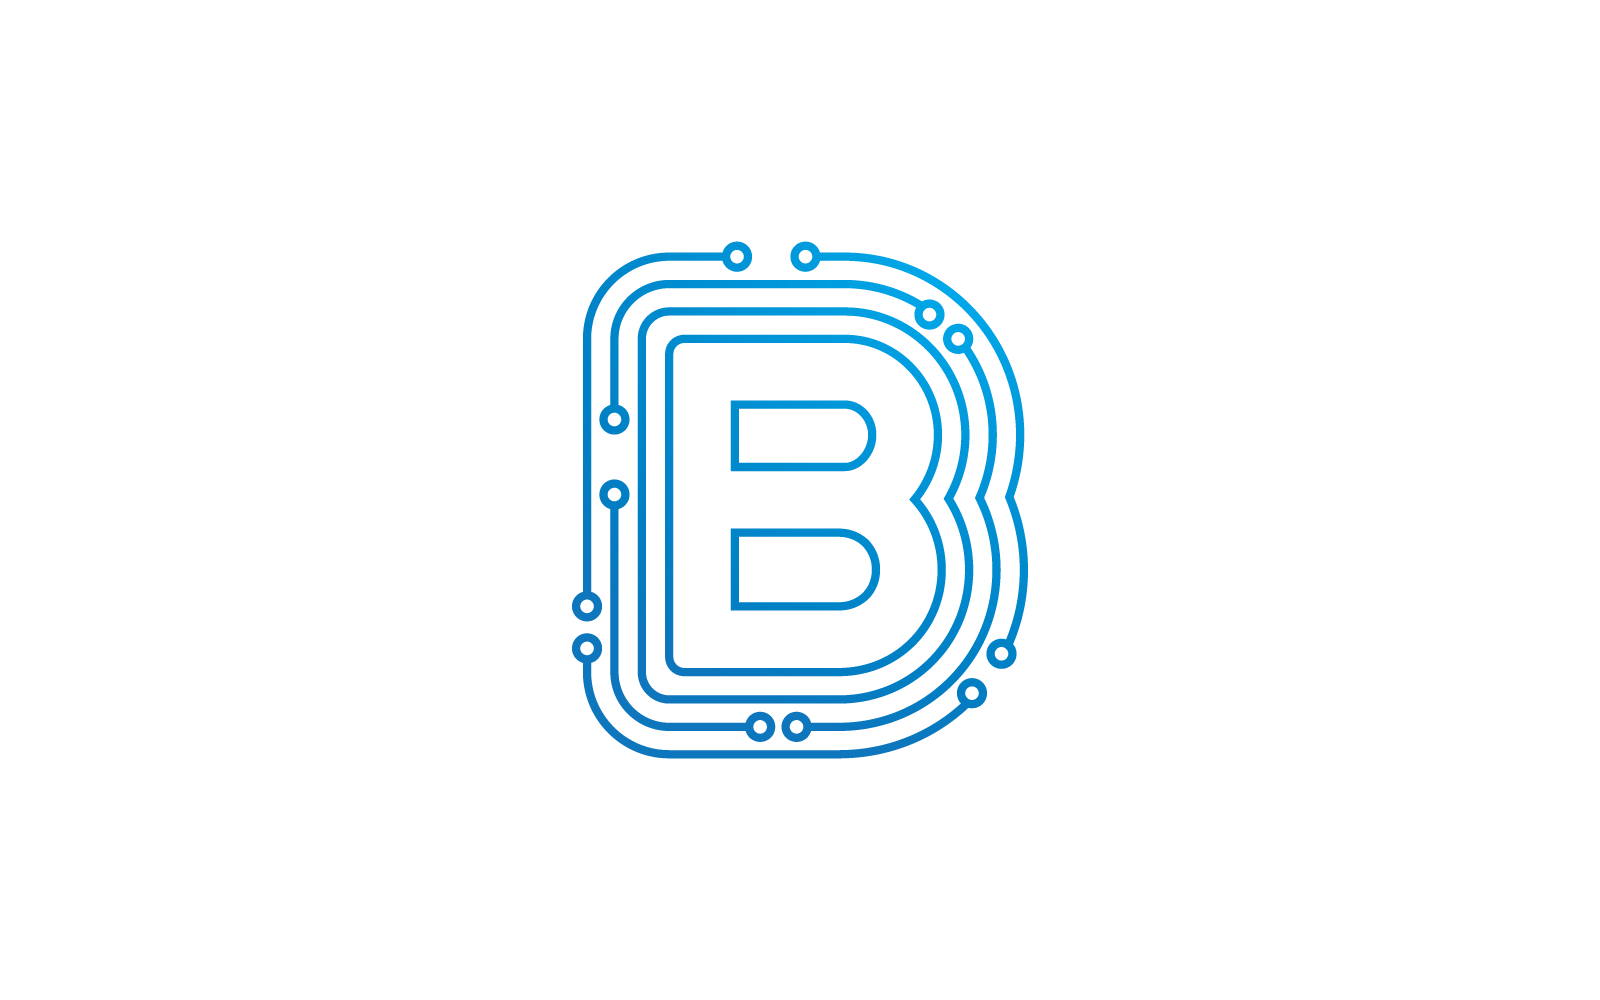 B початкової букви схеми технології ілюстрація логотип вектор шаблон